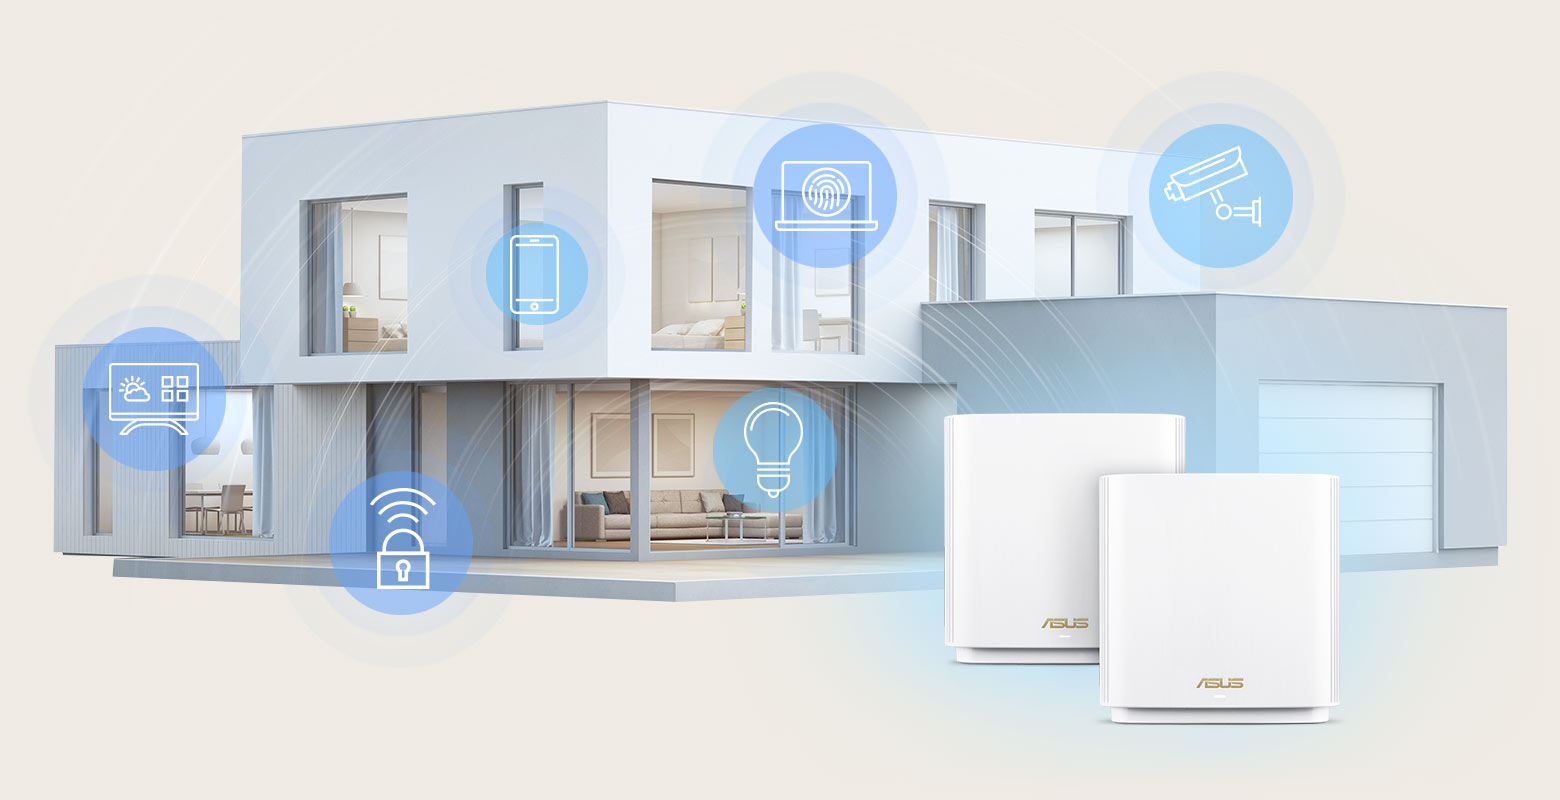 Les routeurs maillés ASUS ZenWiFi XT9 offrent une couverture WiFi à l'échelle de la maison allant jusqu'à 530 mètres carrés pour vous permettre de connecter tous vos gadgets domestiques IoT.